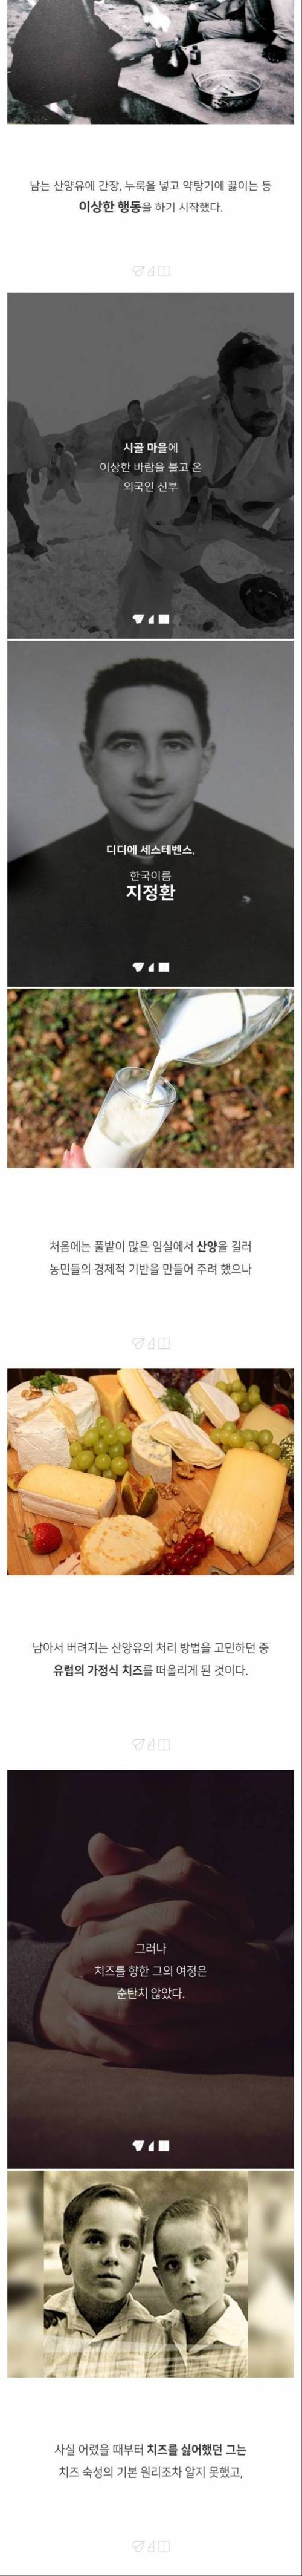 [스압] 대한민국 치즈의 숨겨진 비밀.jpg